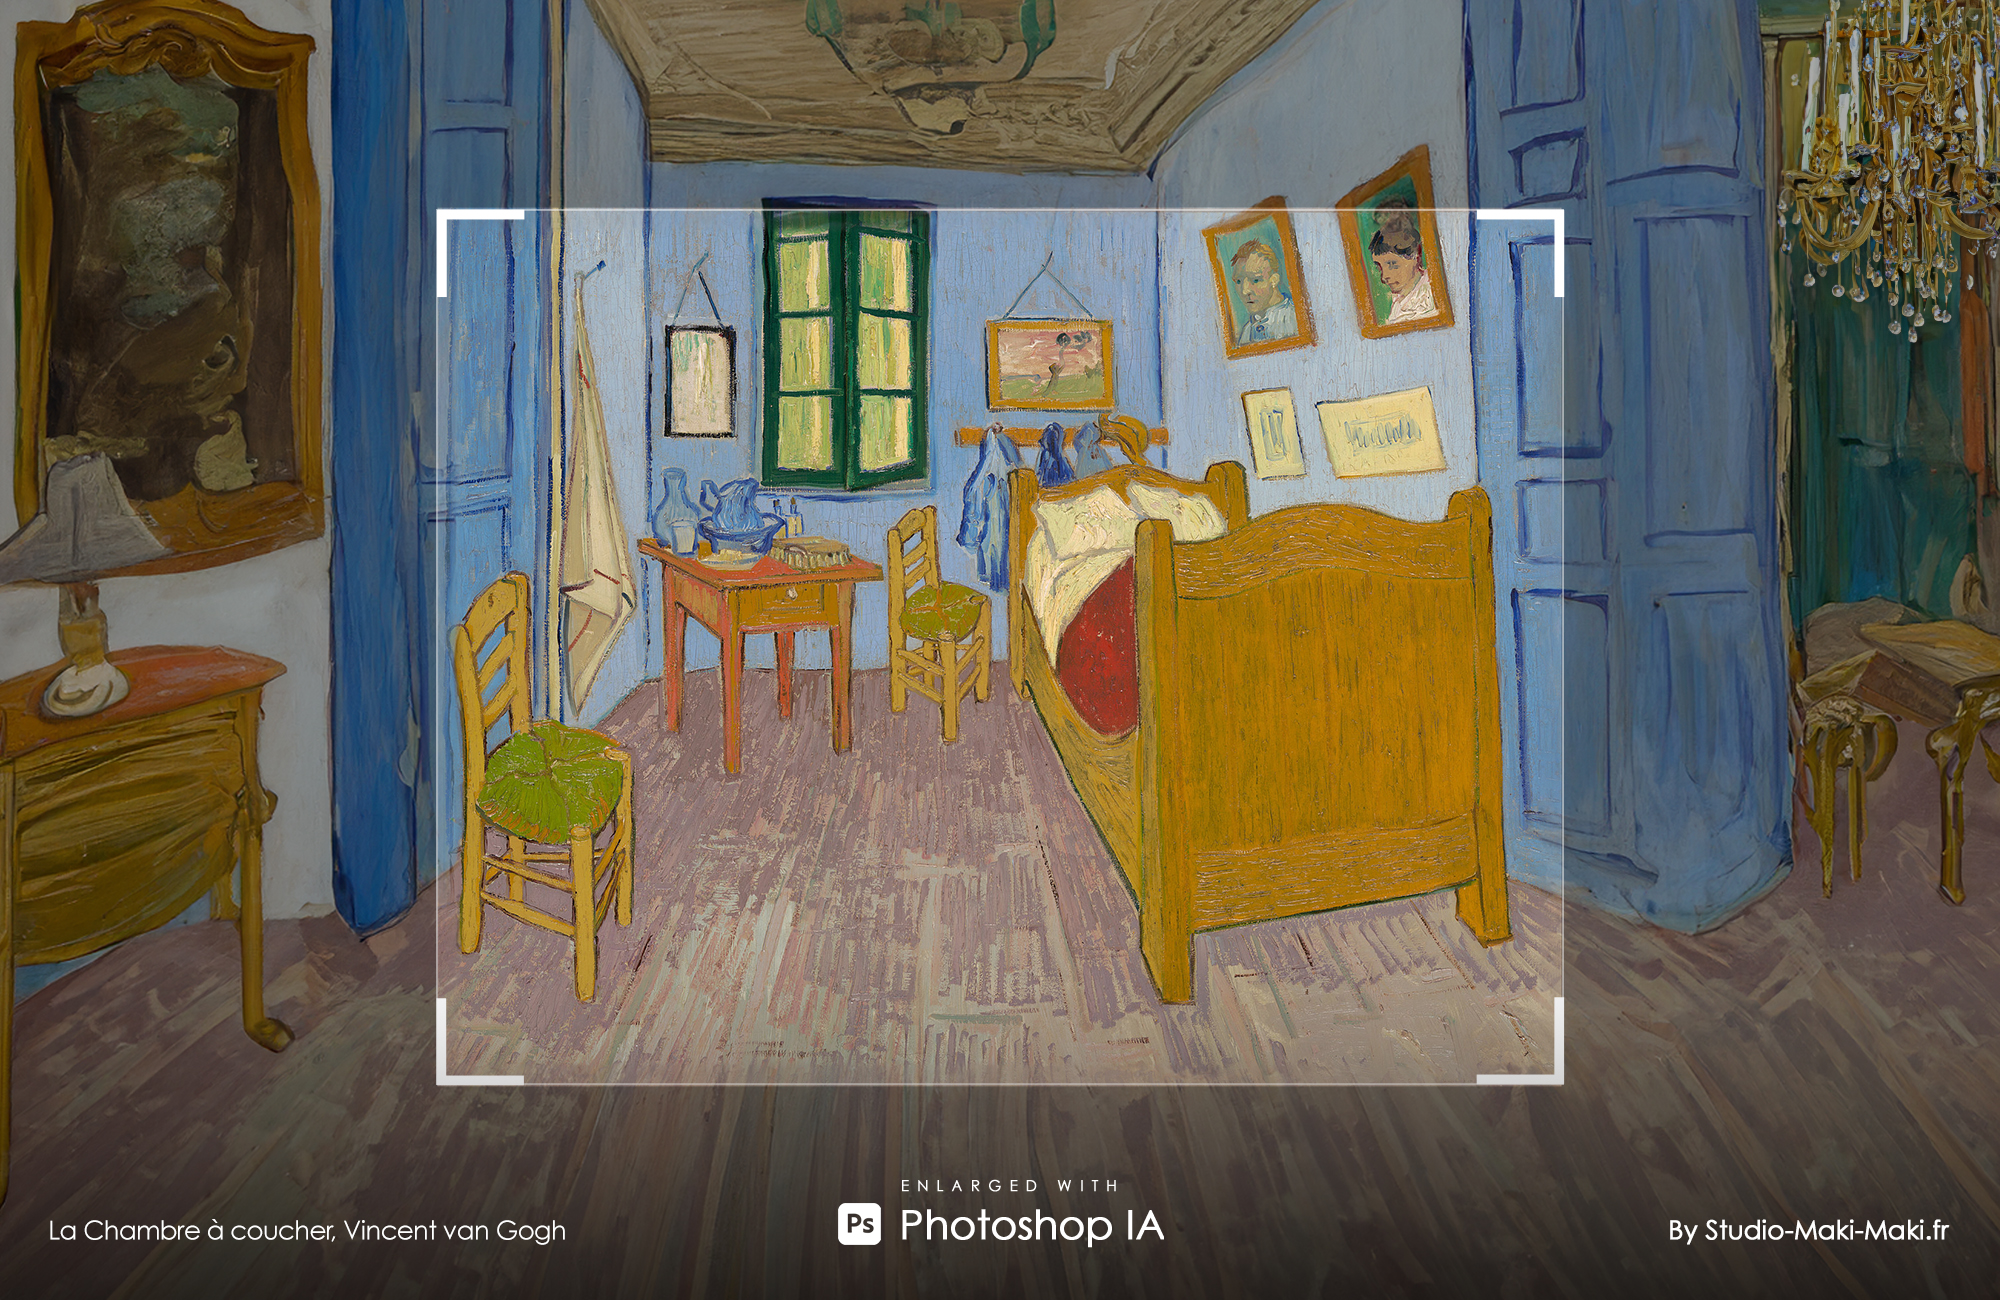 La Chambre à coucher, Vincent van Gogh - Enlarged with Photoshop IA - By Studio Maki Maki